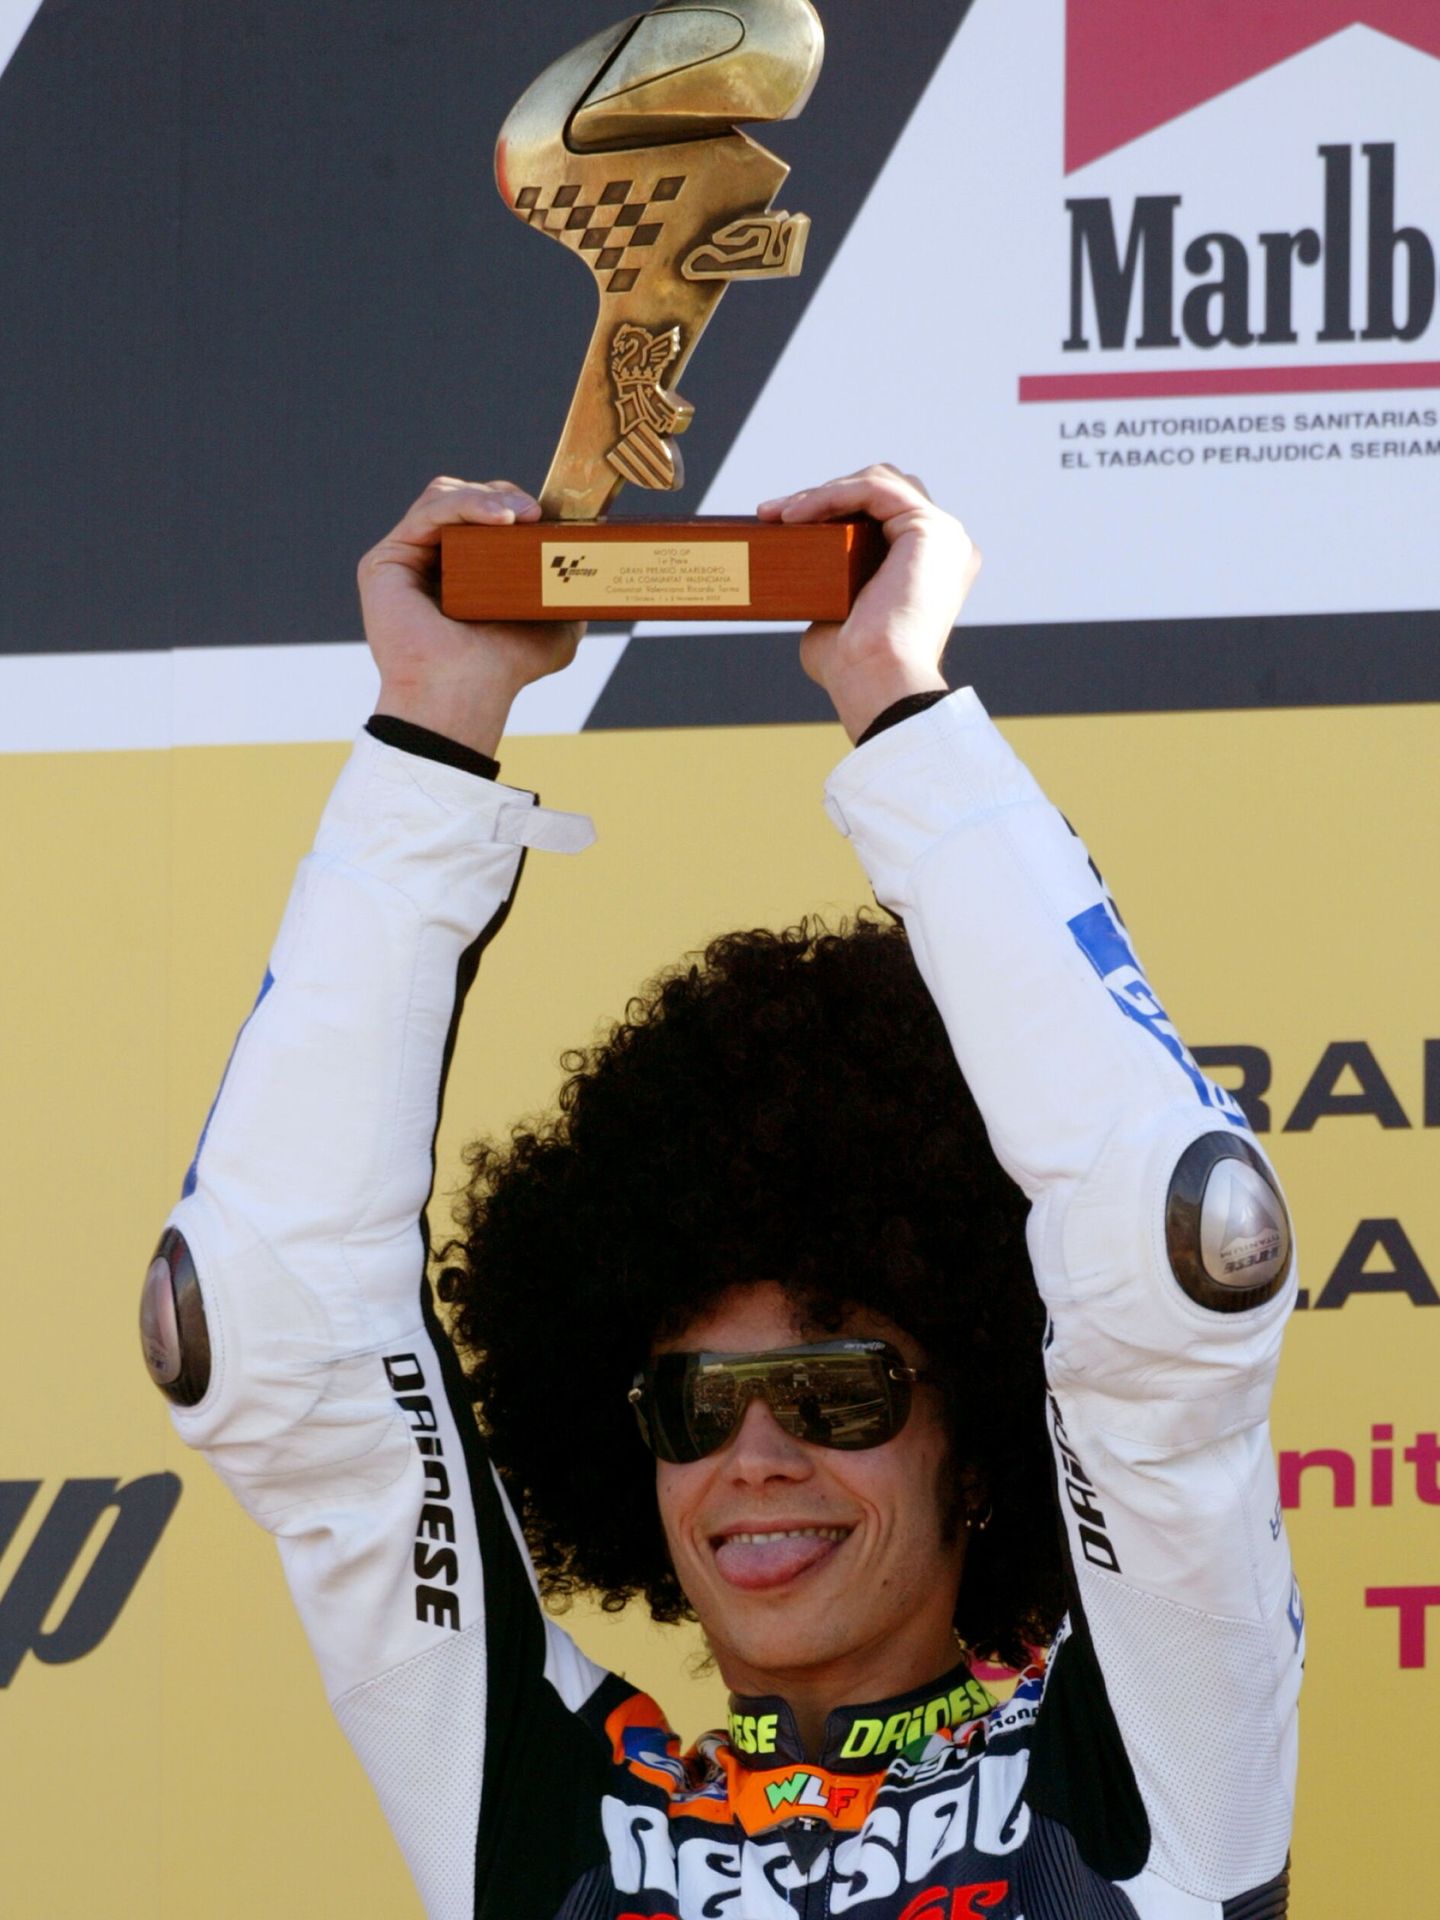 Valentino, en el podio del Gran Premio de la Comunidad Valenciana disfrazado con una peluca. (Reuters)